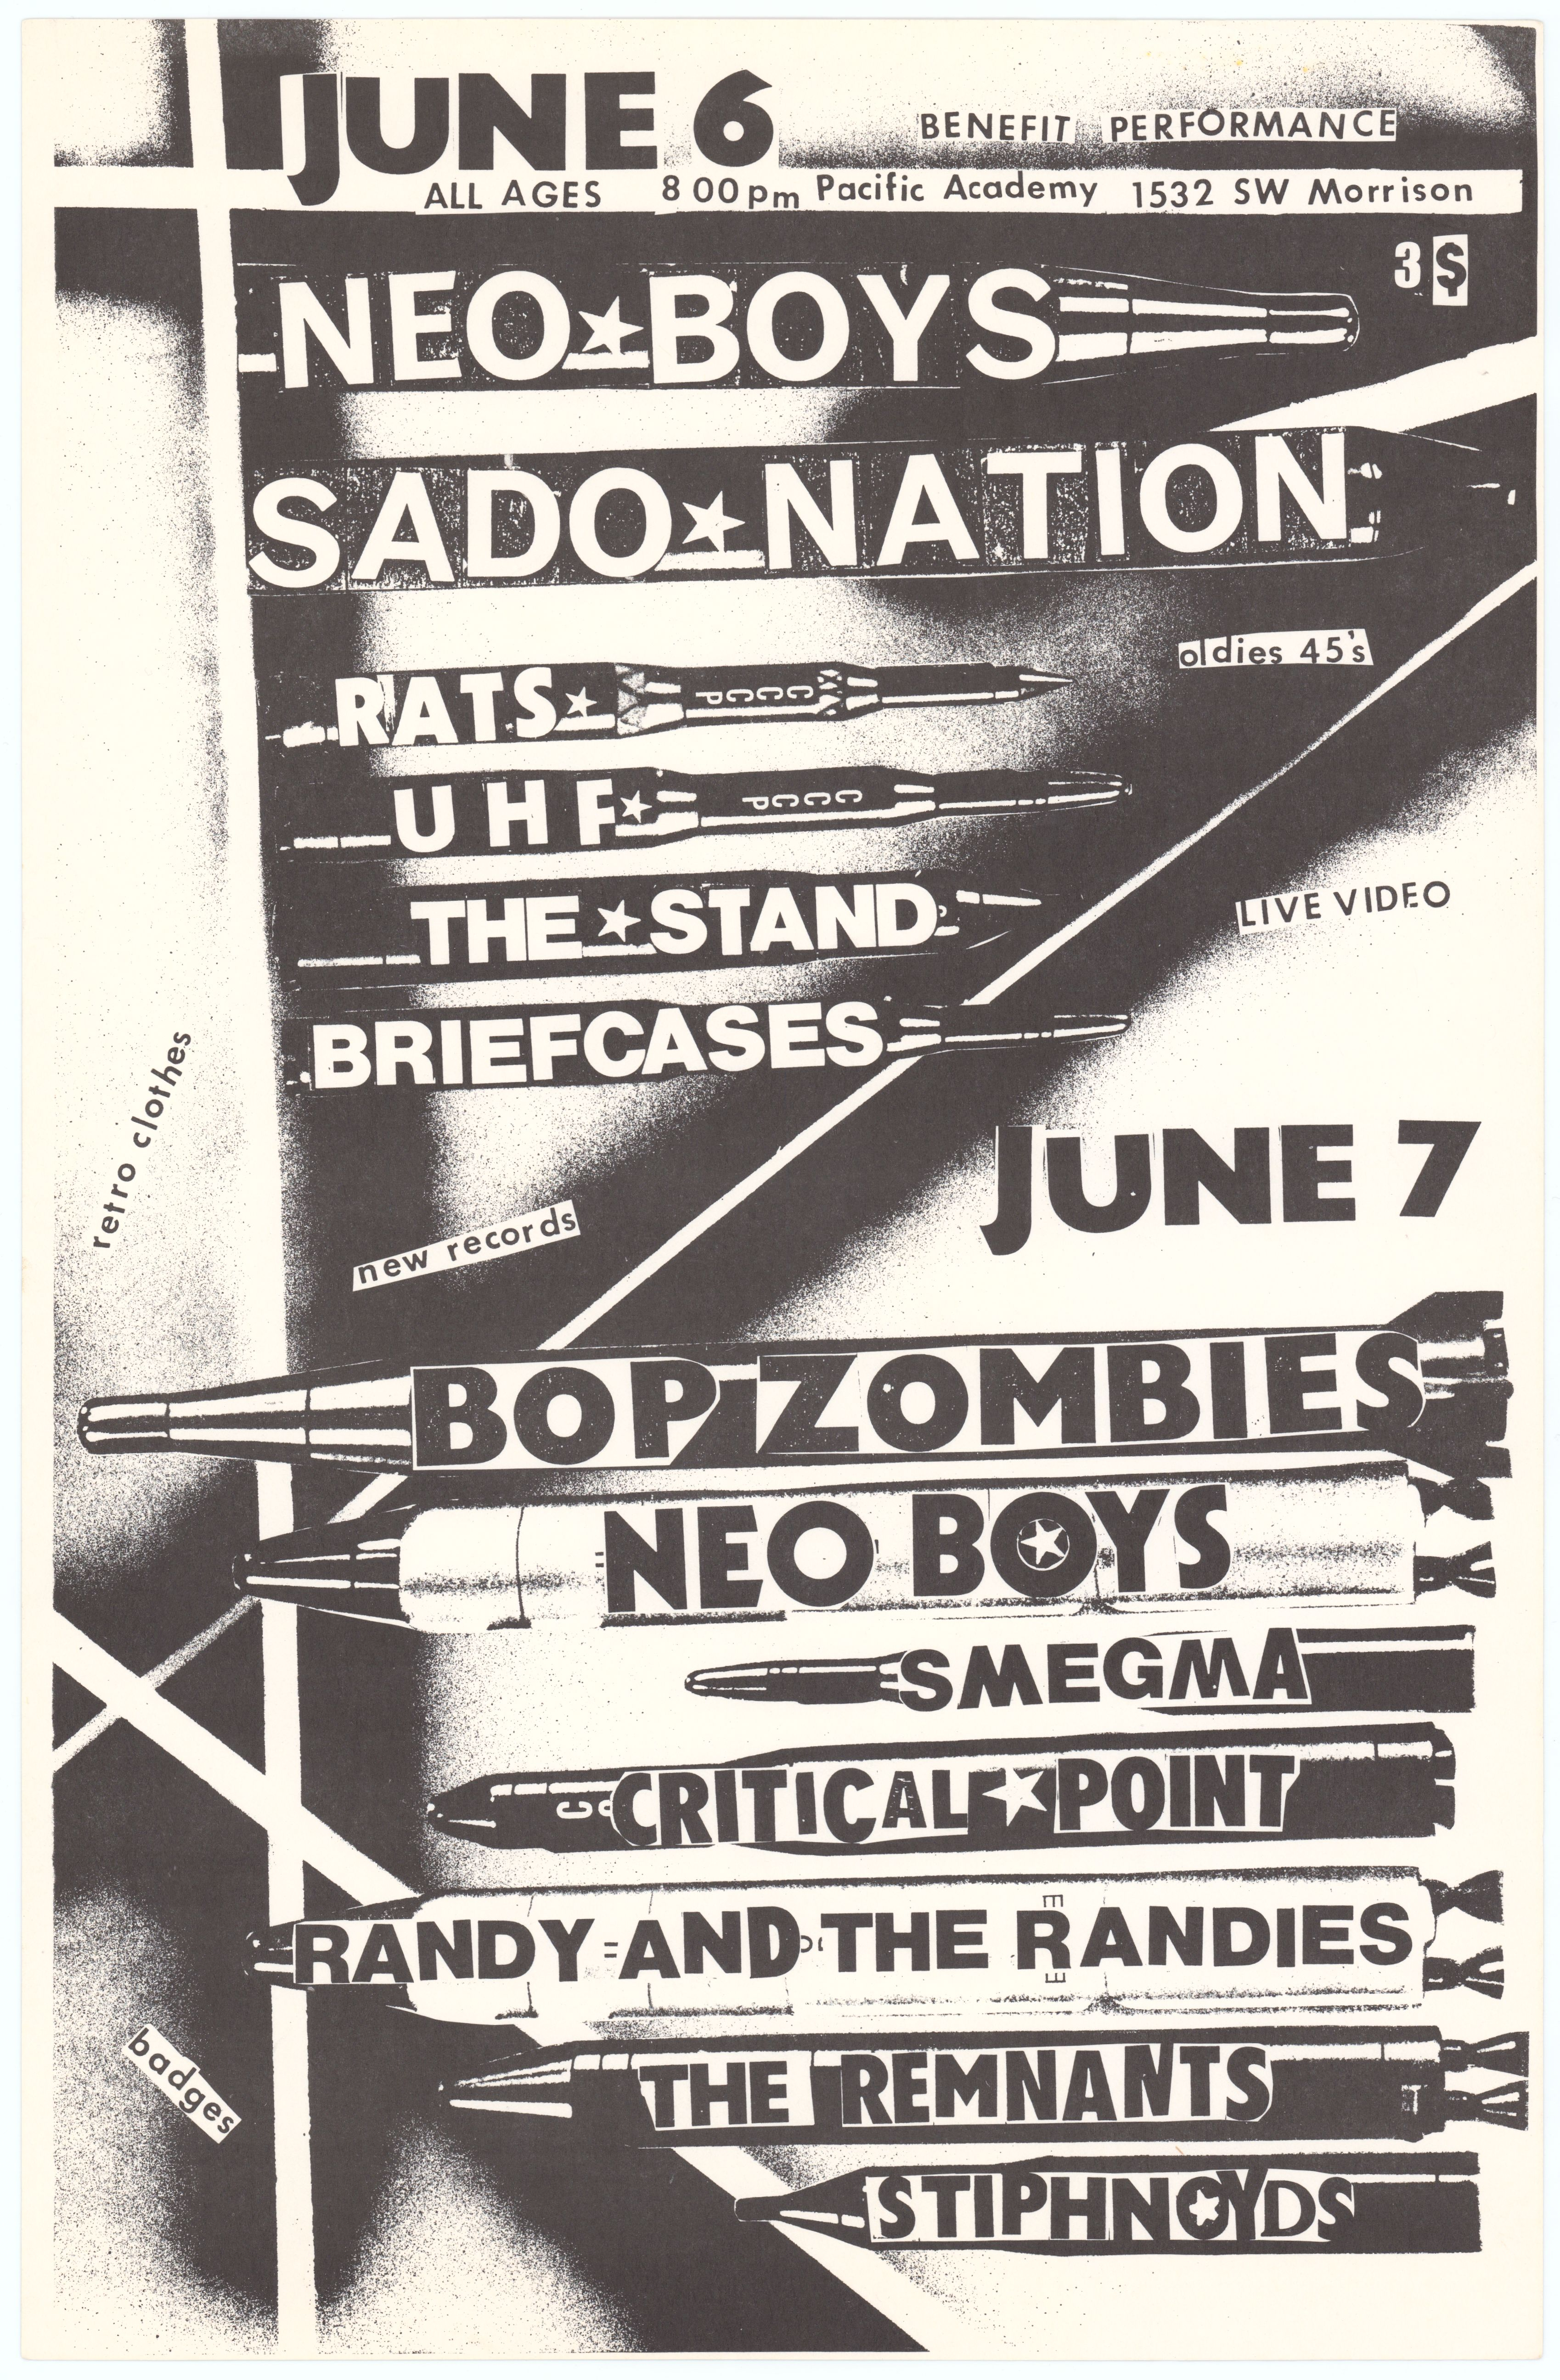 Neo Boys & Sado Nation Pacific Academy Concert Poster